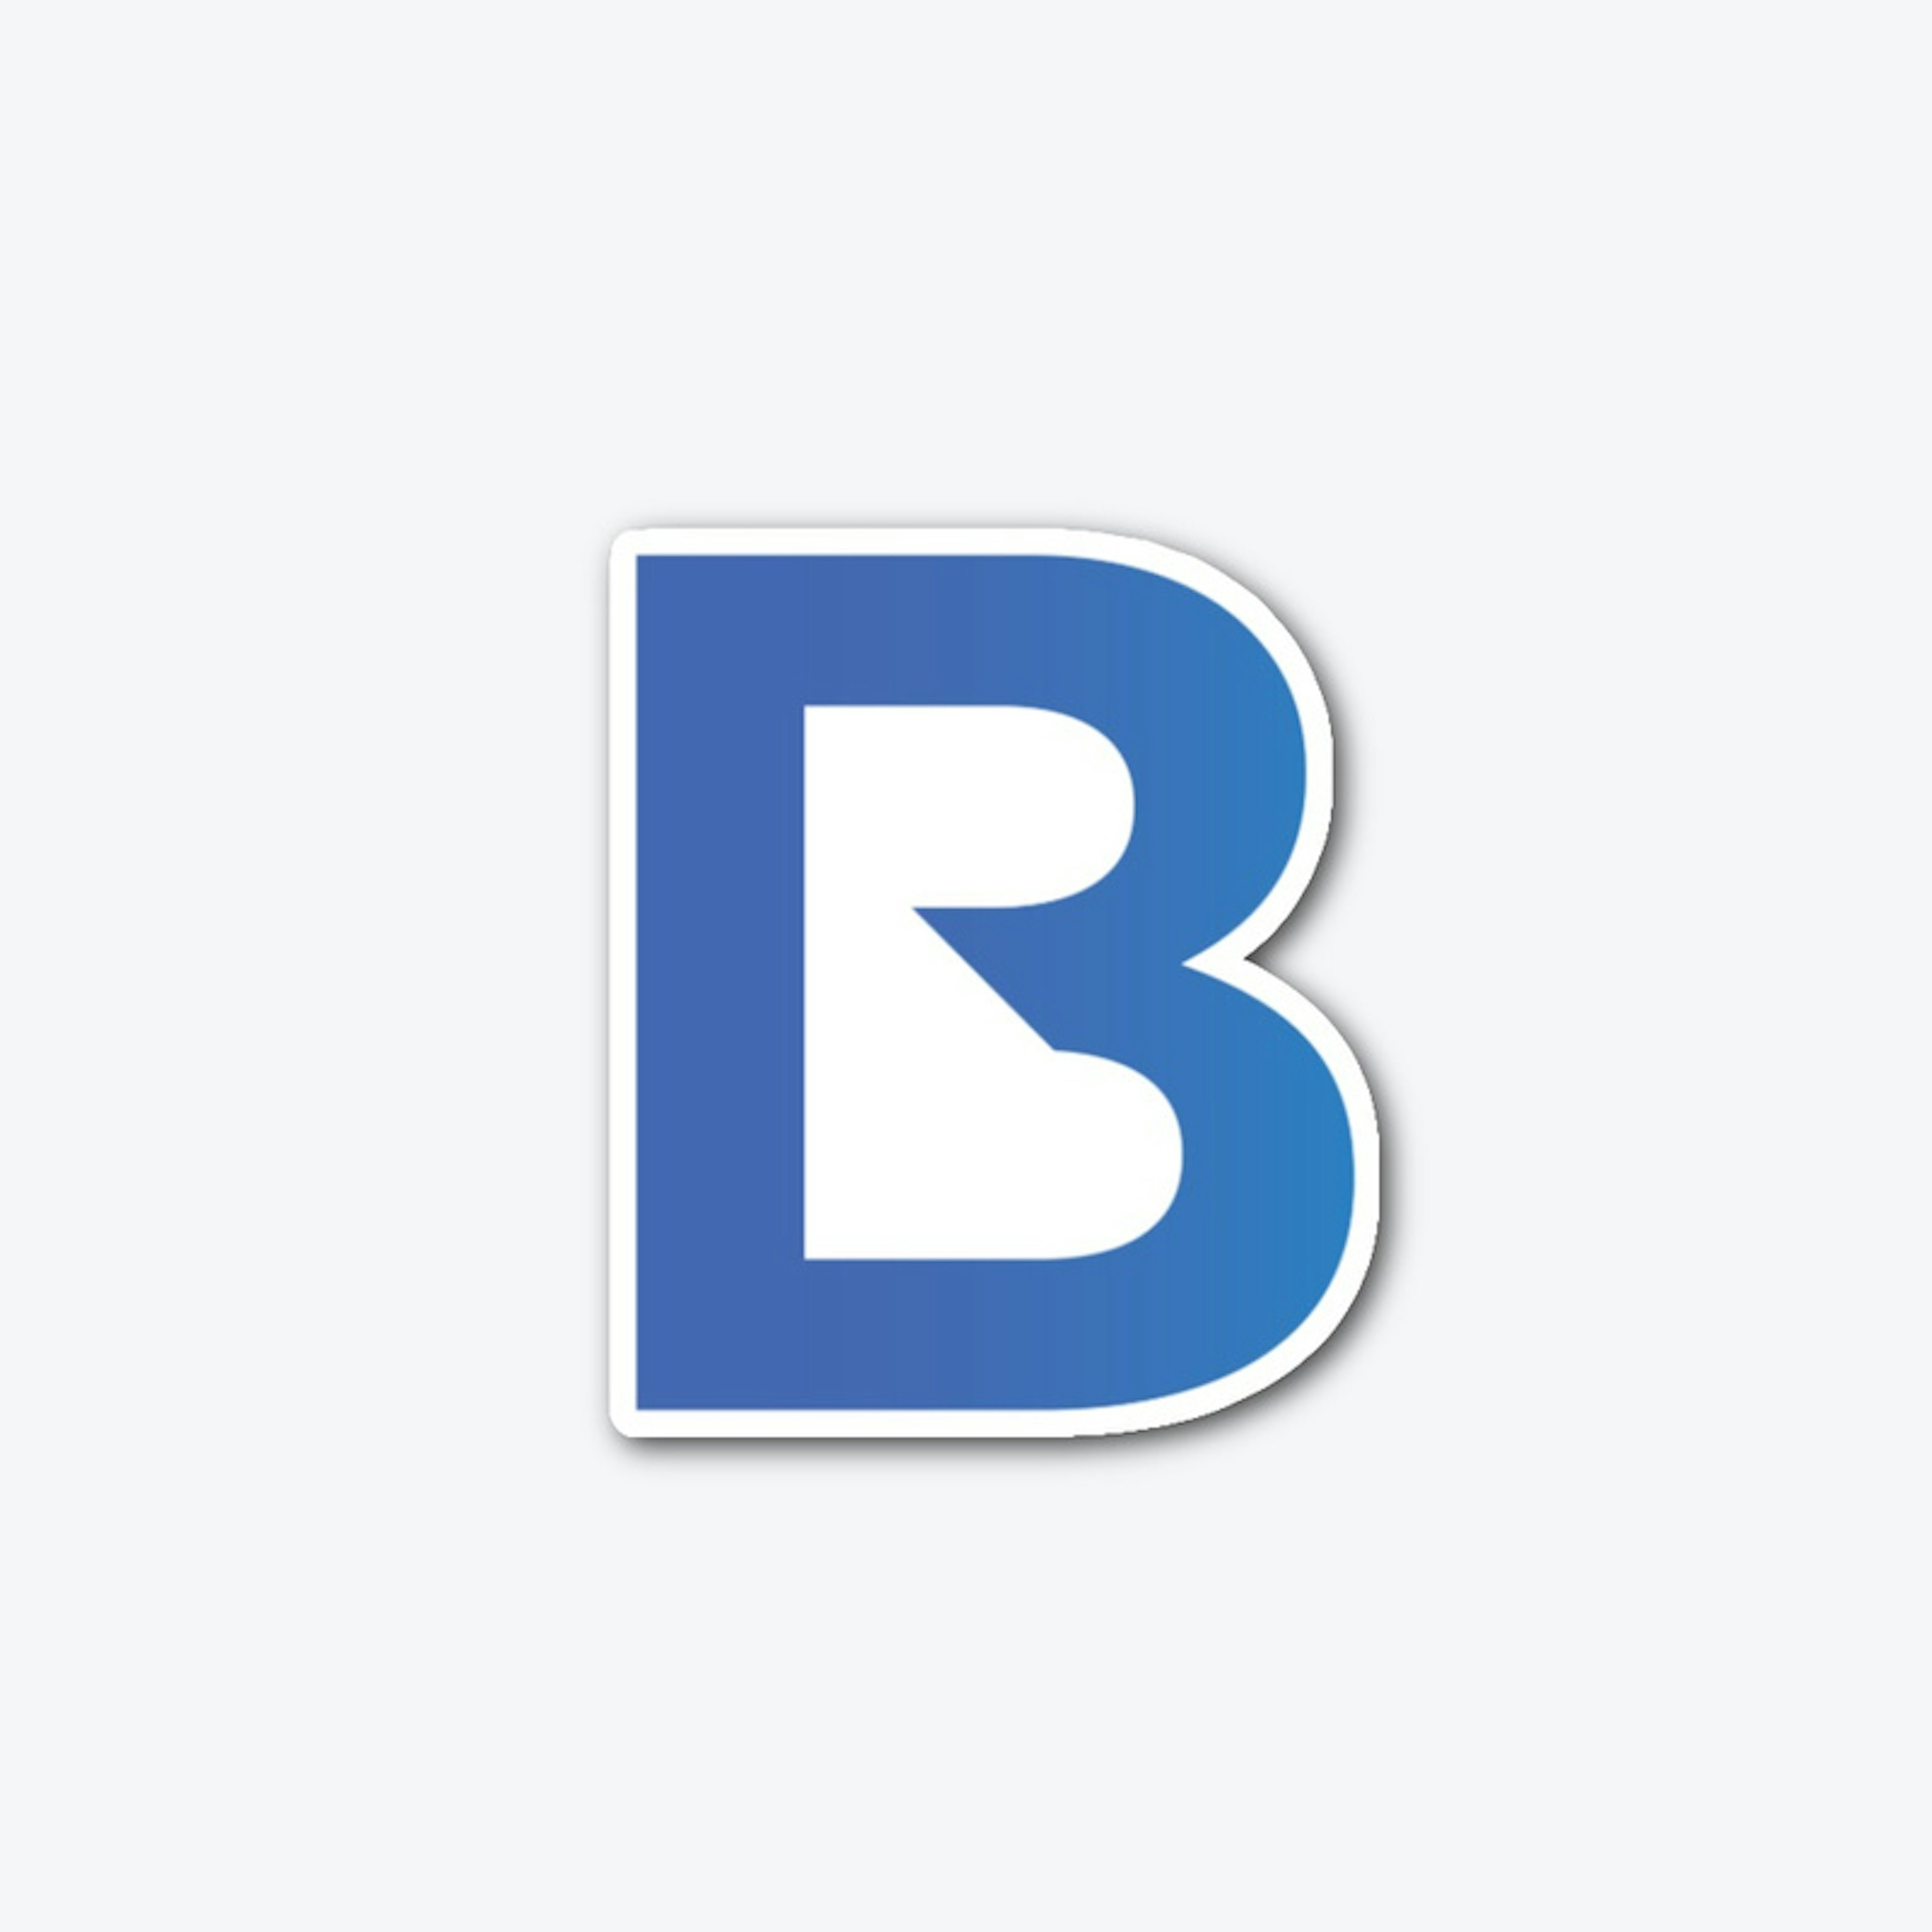 The B1M "B" Sticker